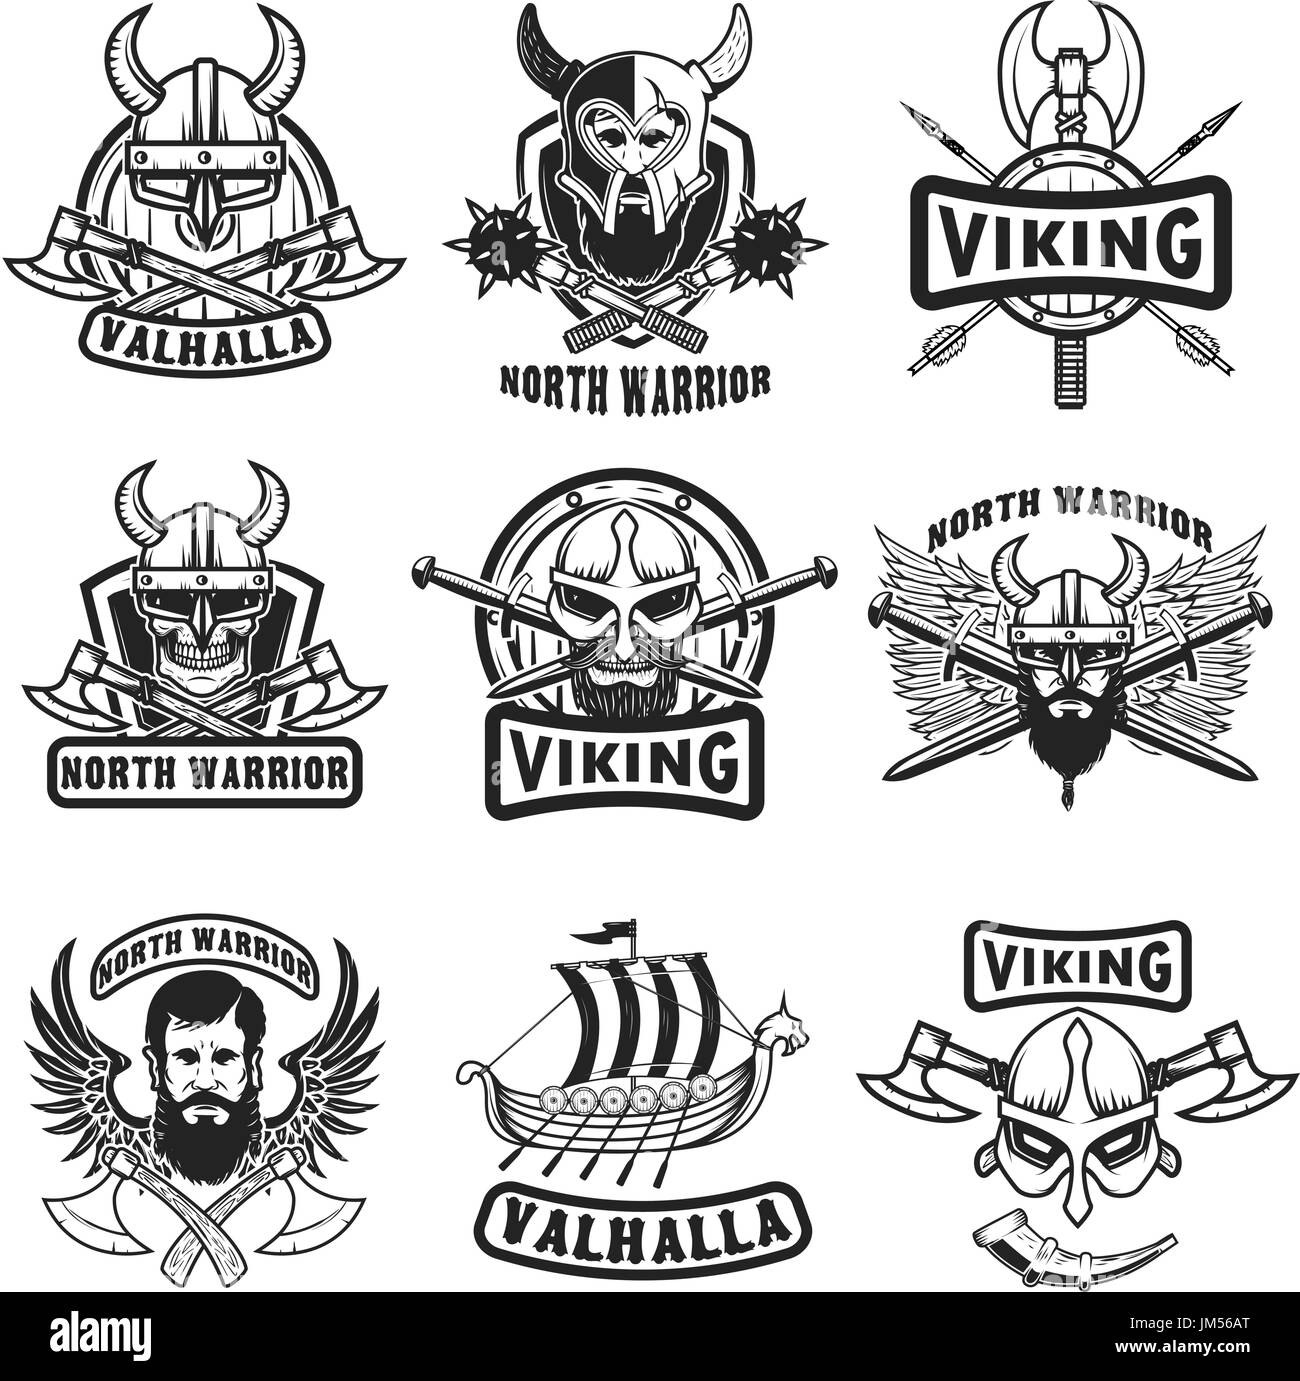 Satz von Vintage Viking Etiketten. Wikinger-Krieger in gehörnten Helm, mit Bart, gekreuzt, Äxte, Schwerter, Schild. Design-Elemente für Label, Emblem, Logo, Zeichen Stock Vektor